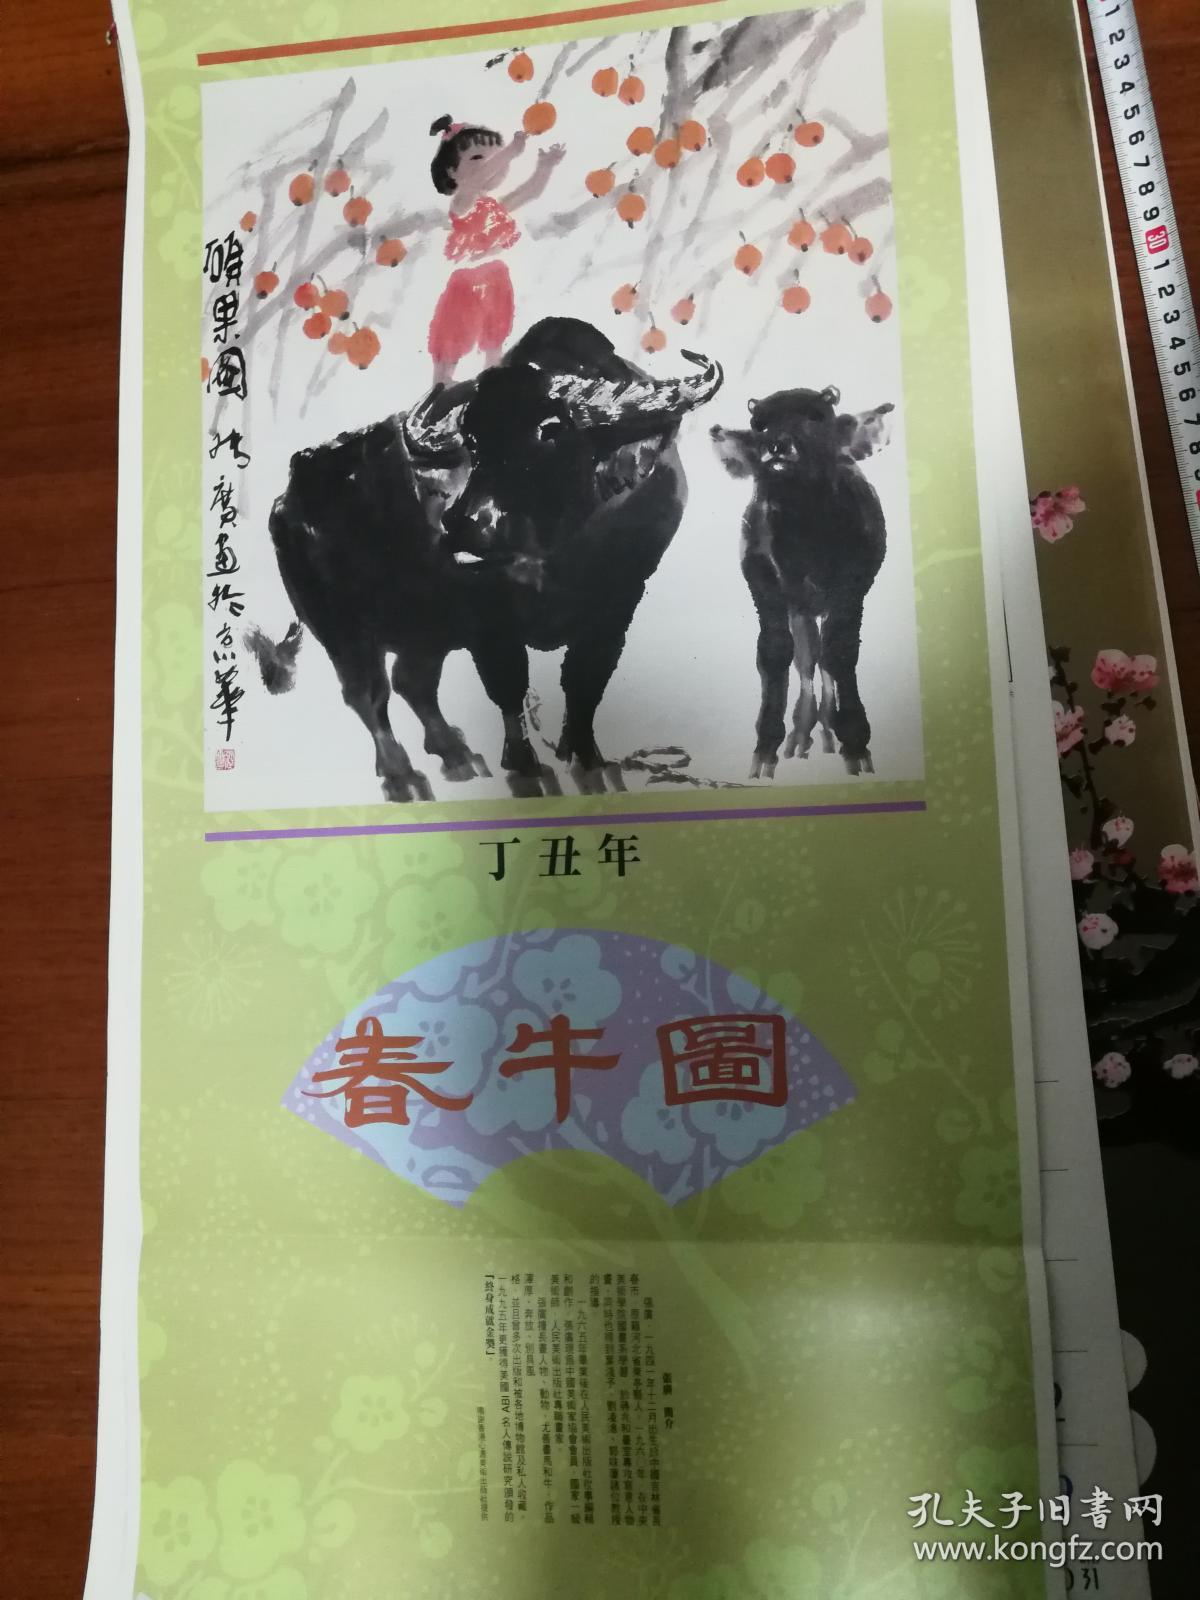 【大型挂历日历】1997春牛图 小孩和牛的水墨